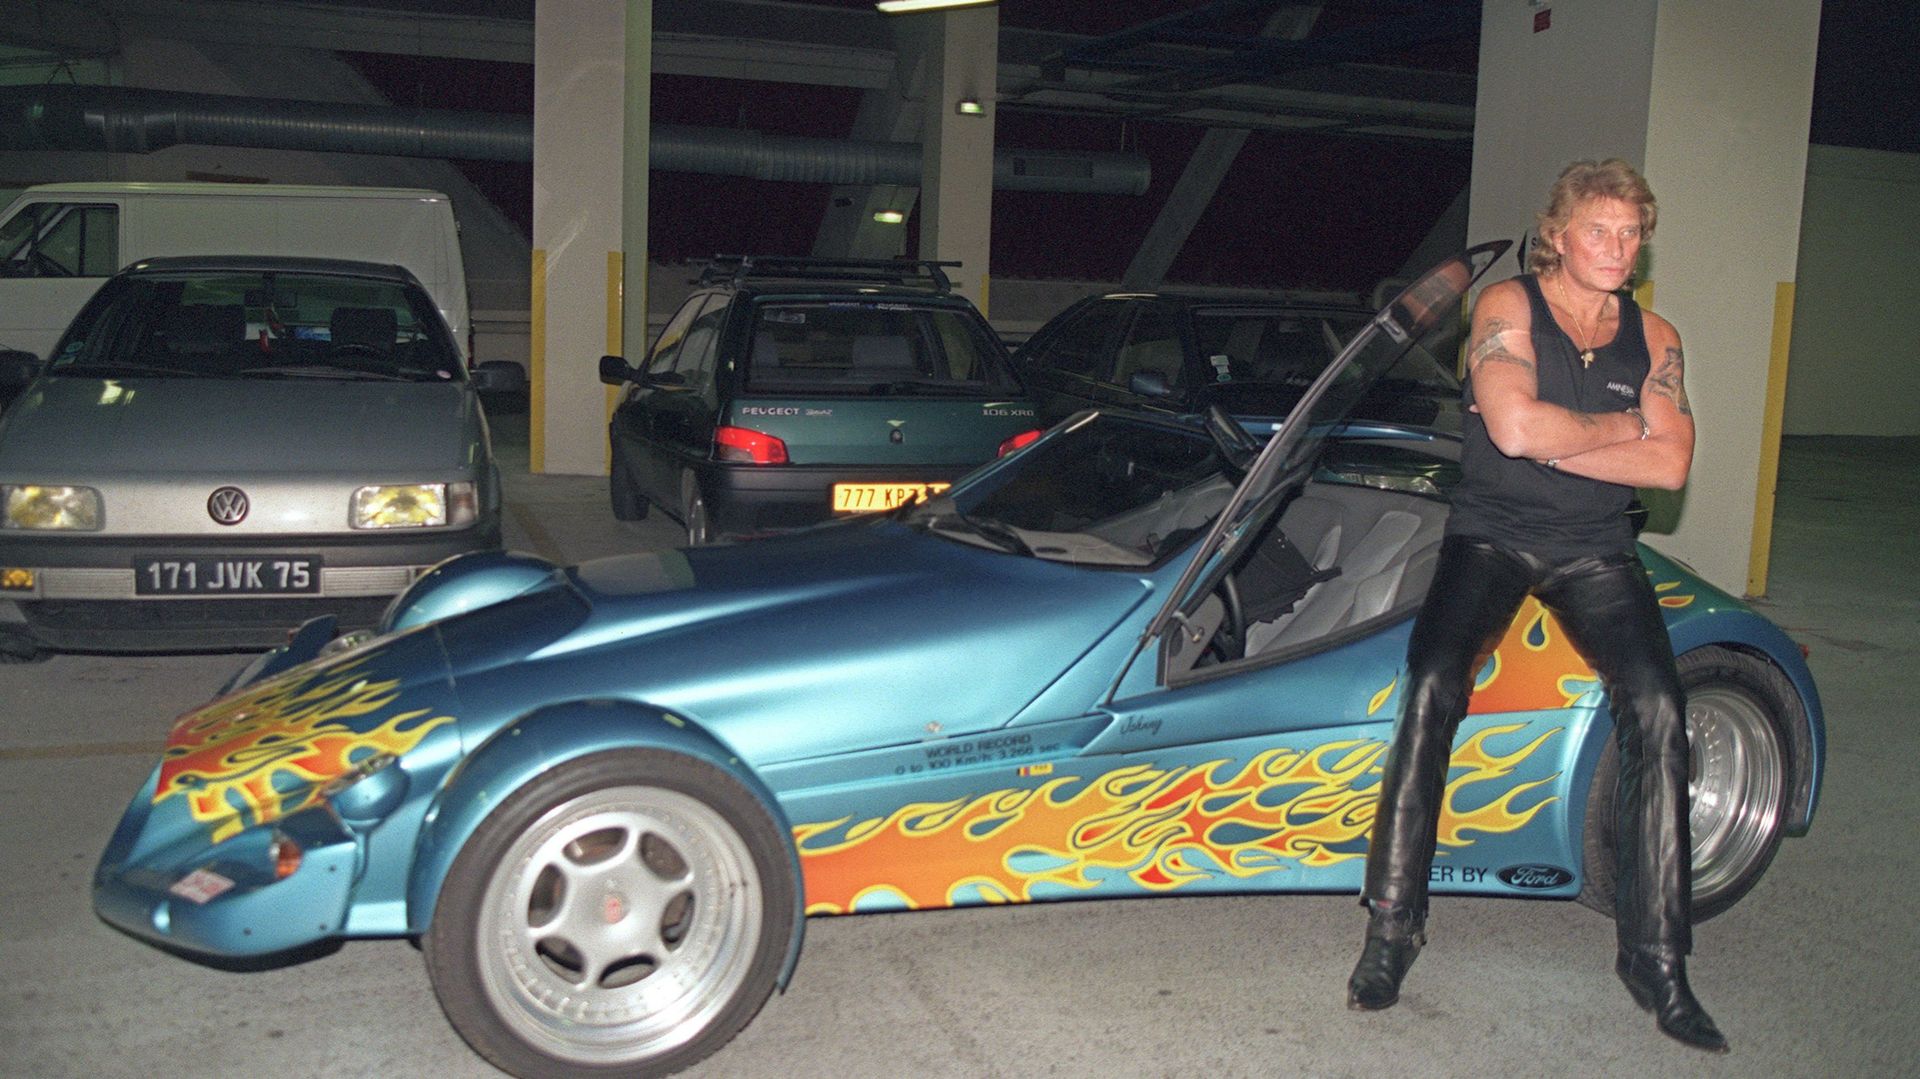 Le chanteur de rock et acteur français Johnny Hallyday pose pour les photographes, le 11 septembre 1995 dans le parking du Palais Omnisport de Paris-Bercy (POPB), aux côtés de la Vertigo dont il vient de faire l'acquisation. 